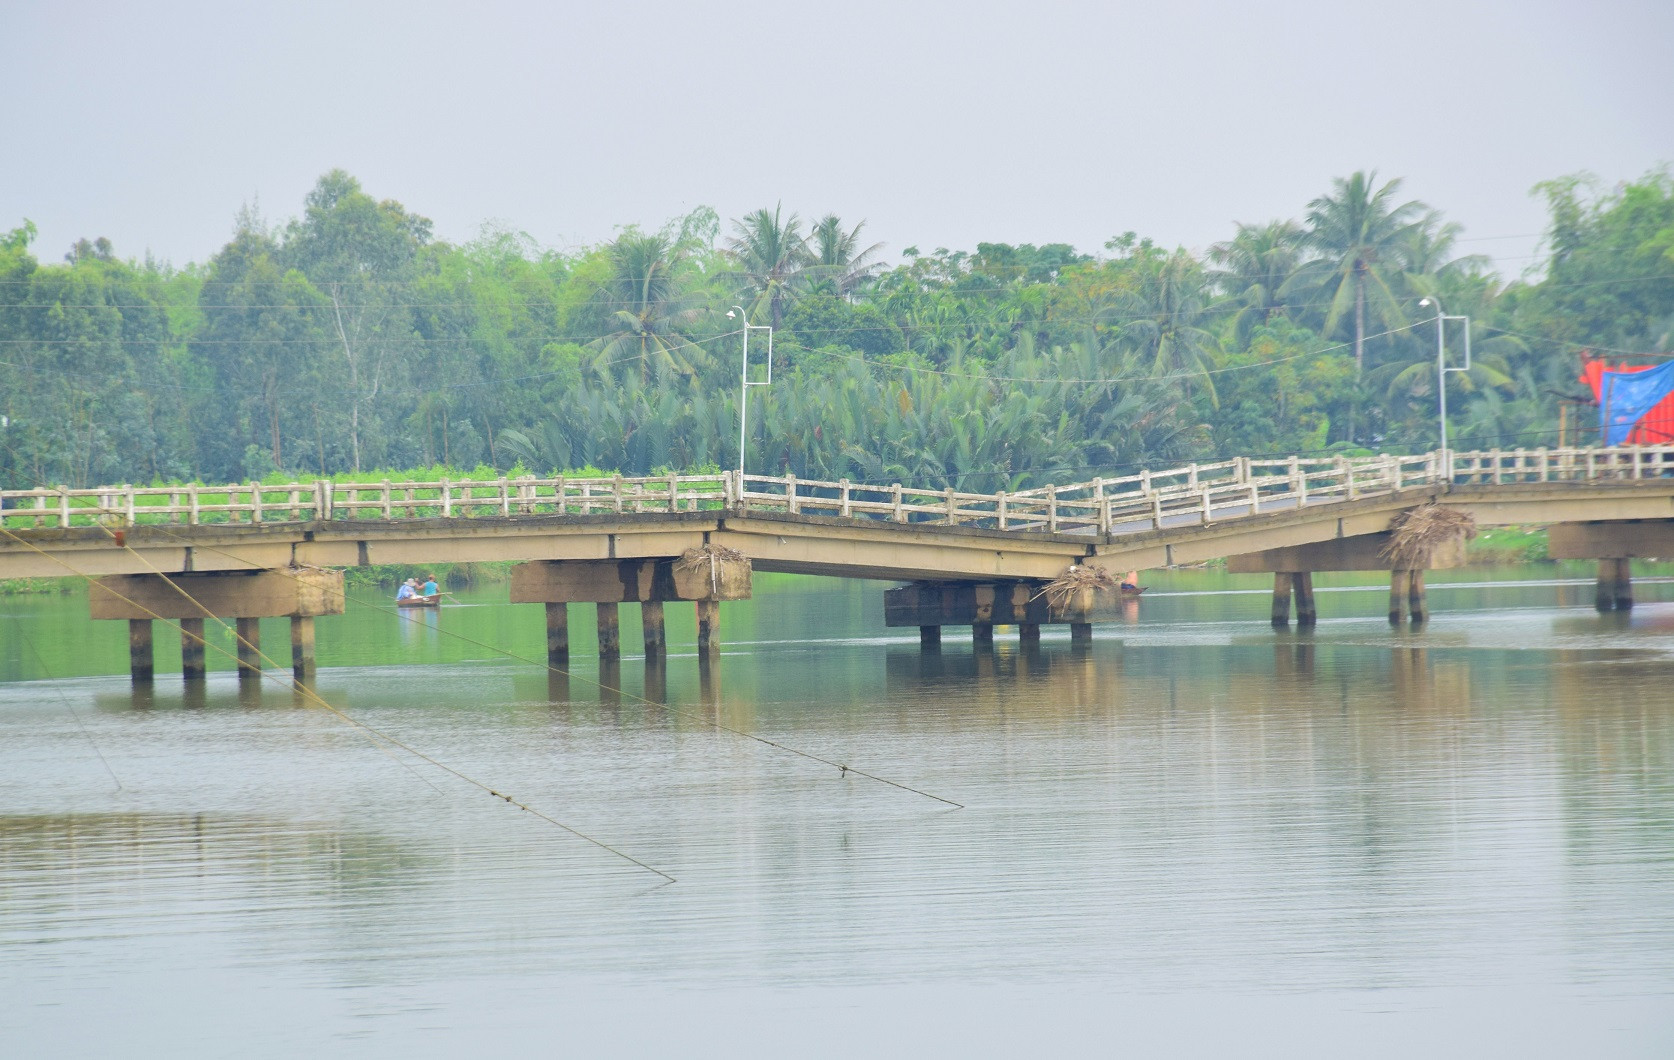 Ông Nguyễn Sáu - Chủ tịch UBND huyện Duy Xuyên cho biết, cầu Hà Tân đã được UBND tỉnh đồng ý chủ trương xây mới. Do thay đổi thiết kế xây dựng so với ban đầu nên đên nay vẫn chưa được triển khai xây dựng.